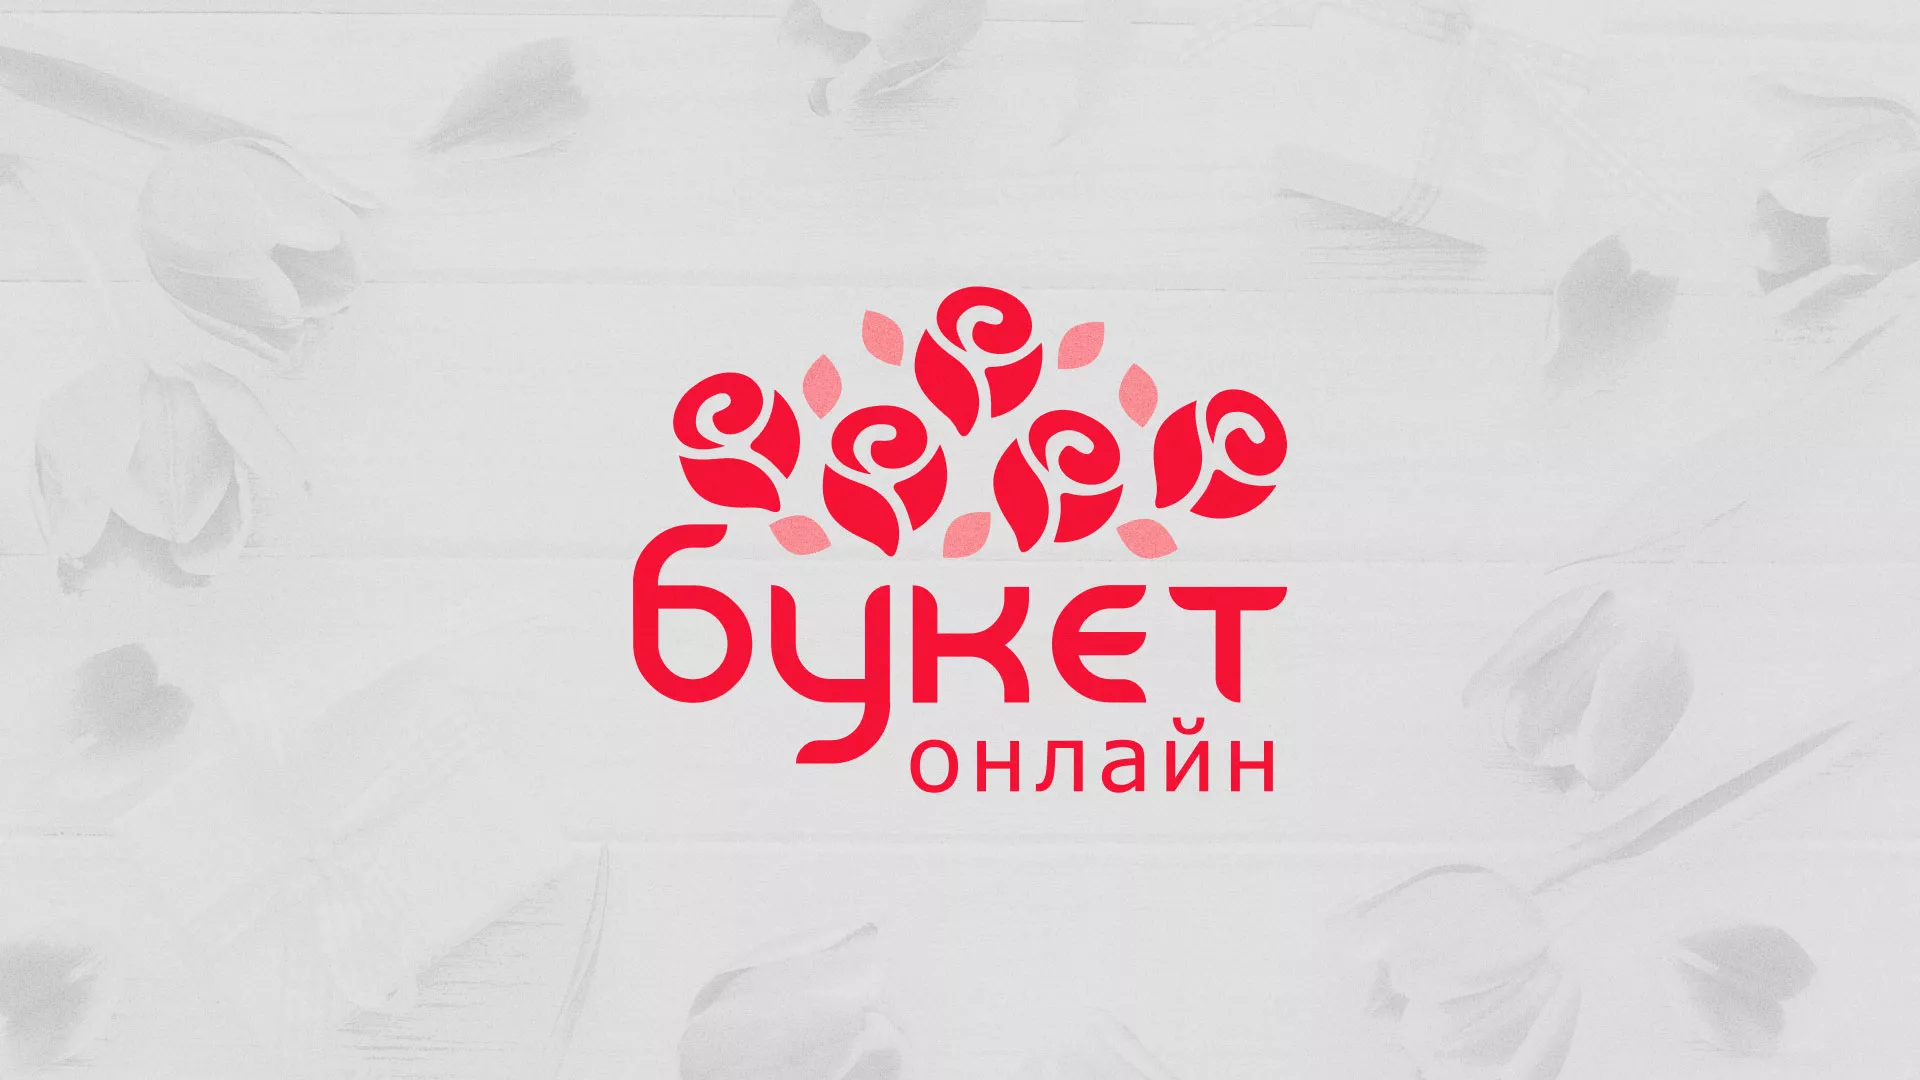 Создание интернет-магазина «Букет-онлайн» по цветам в Кирсе